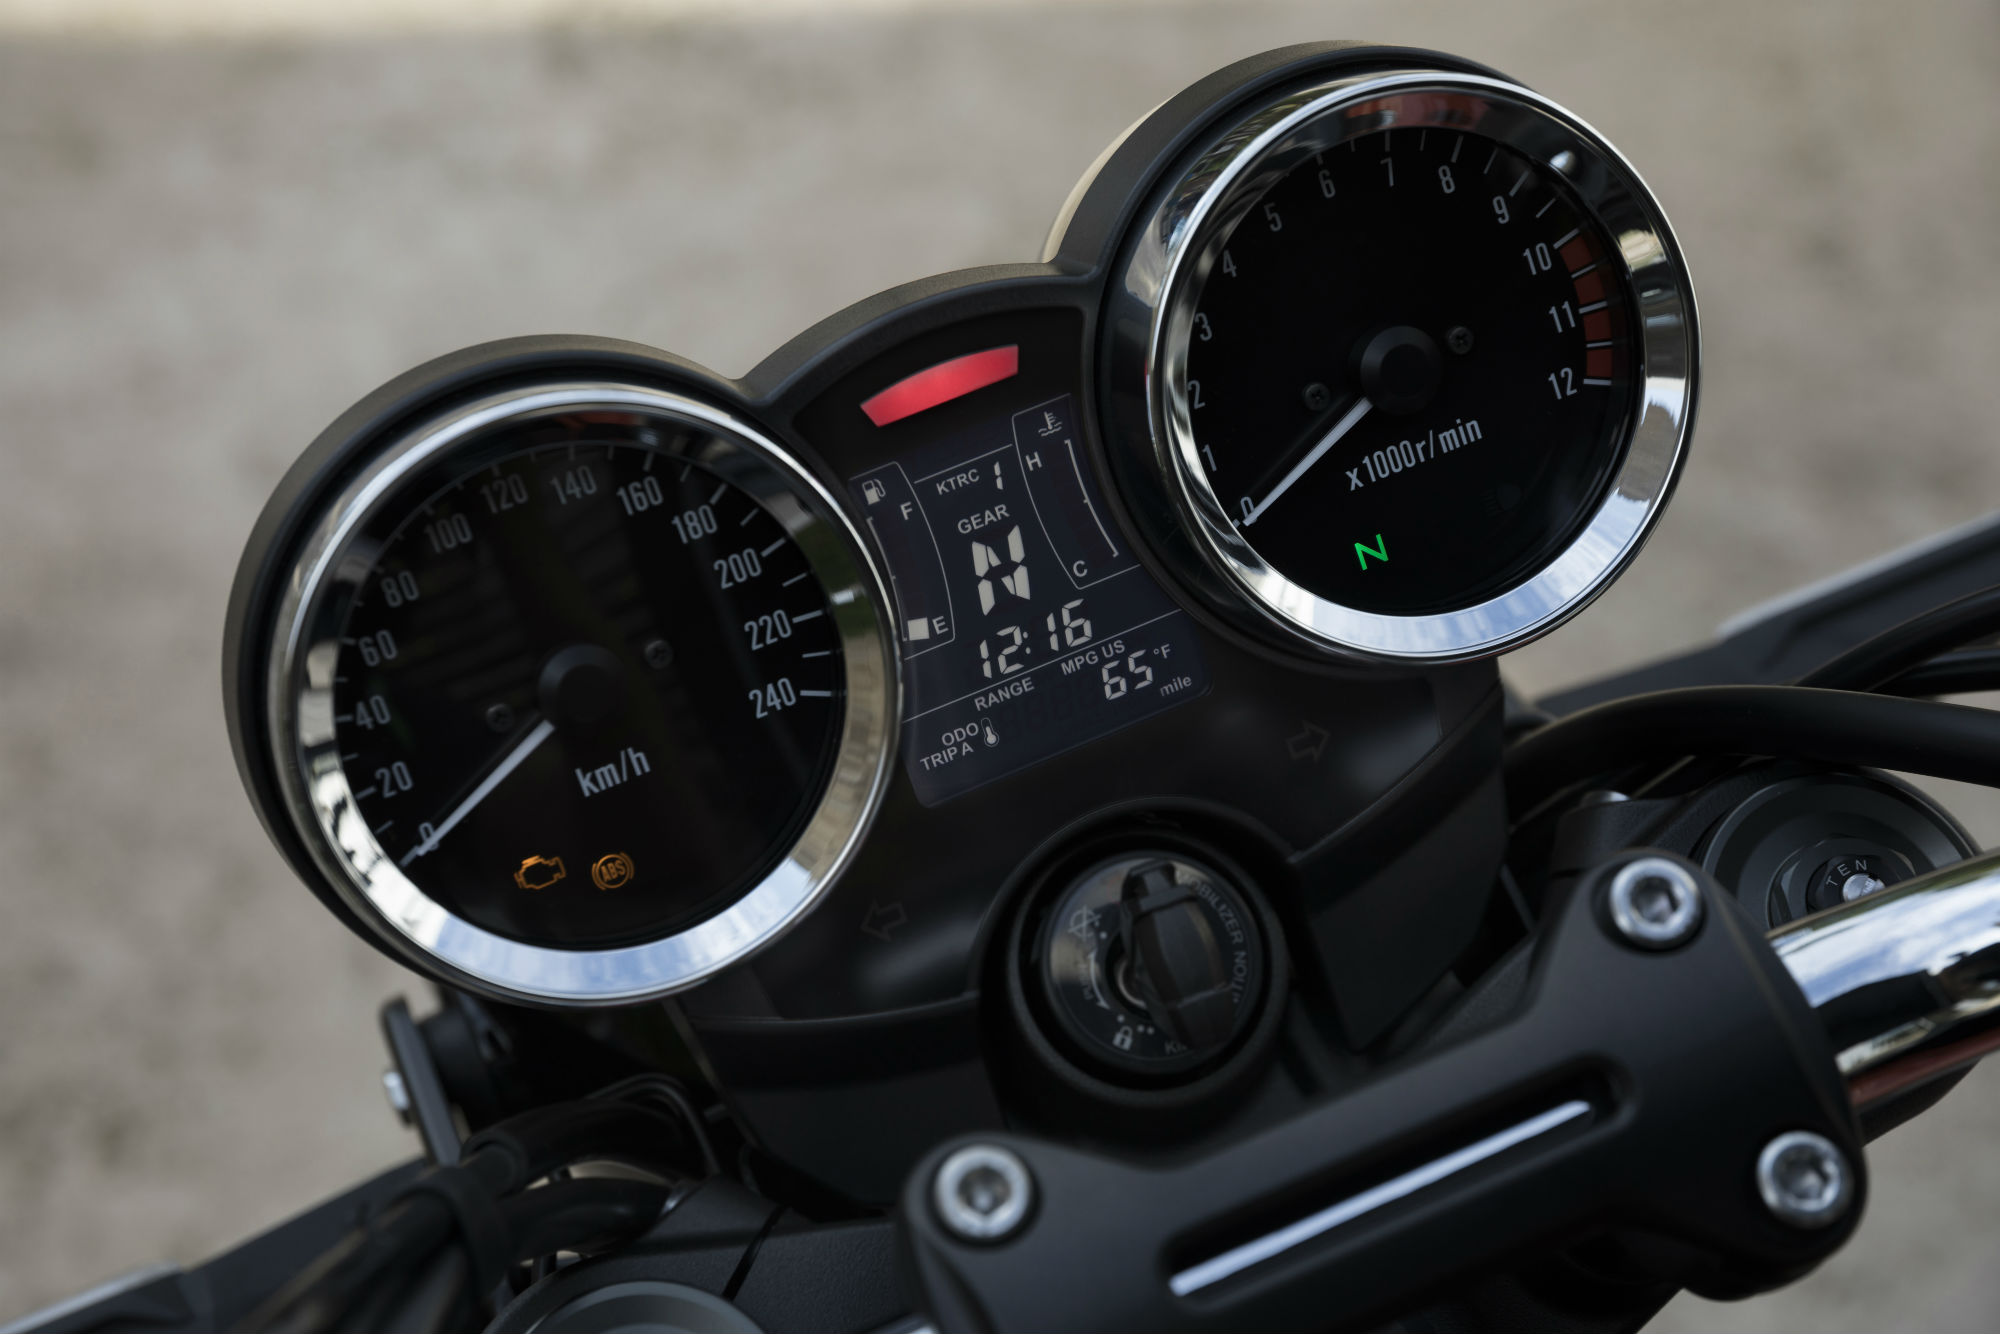 First ride: Kawasaki Z900RS review